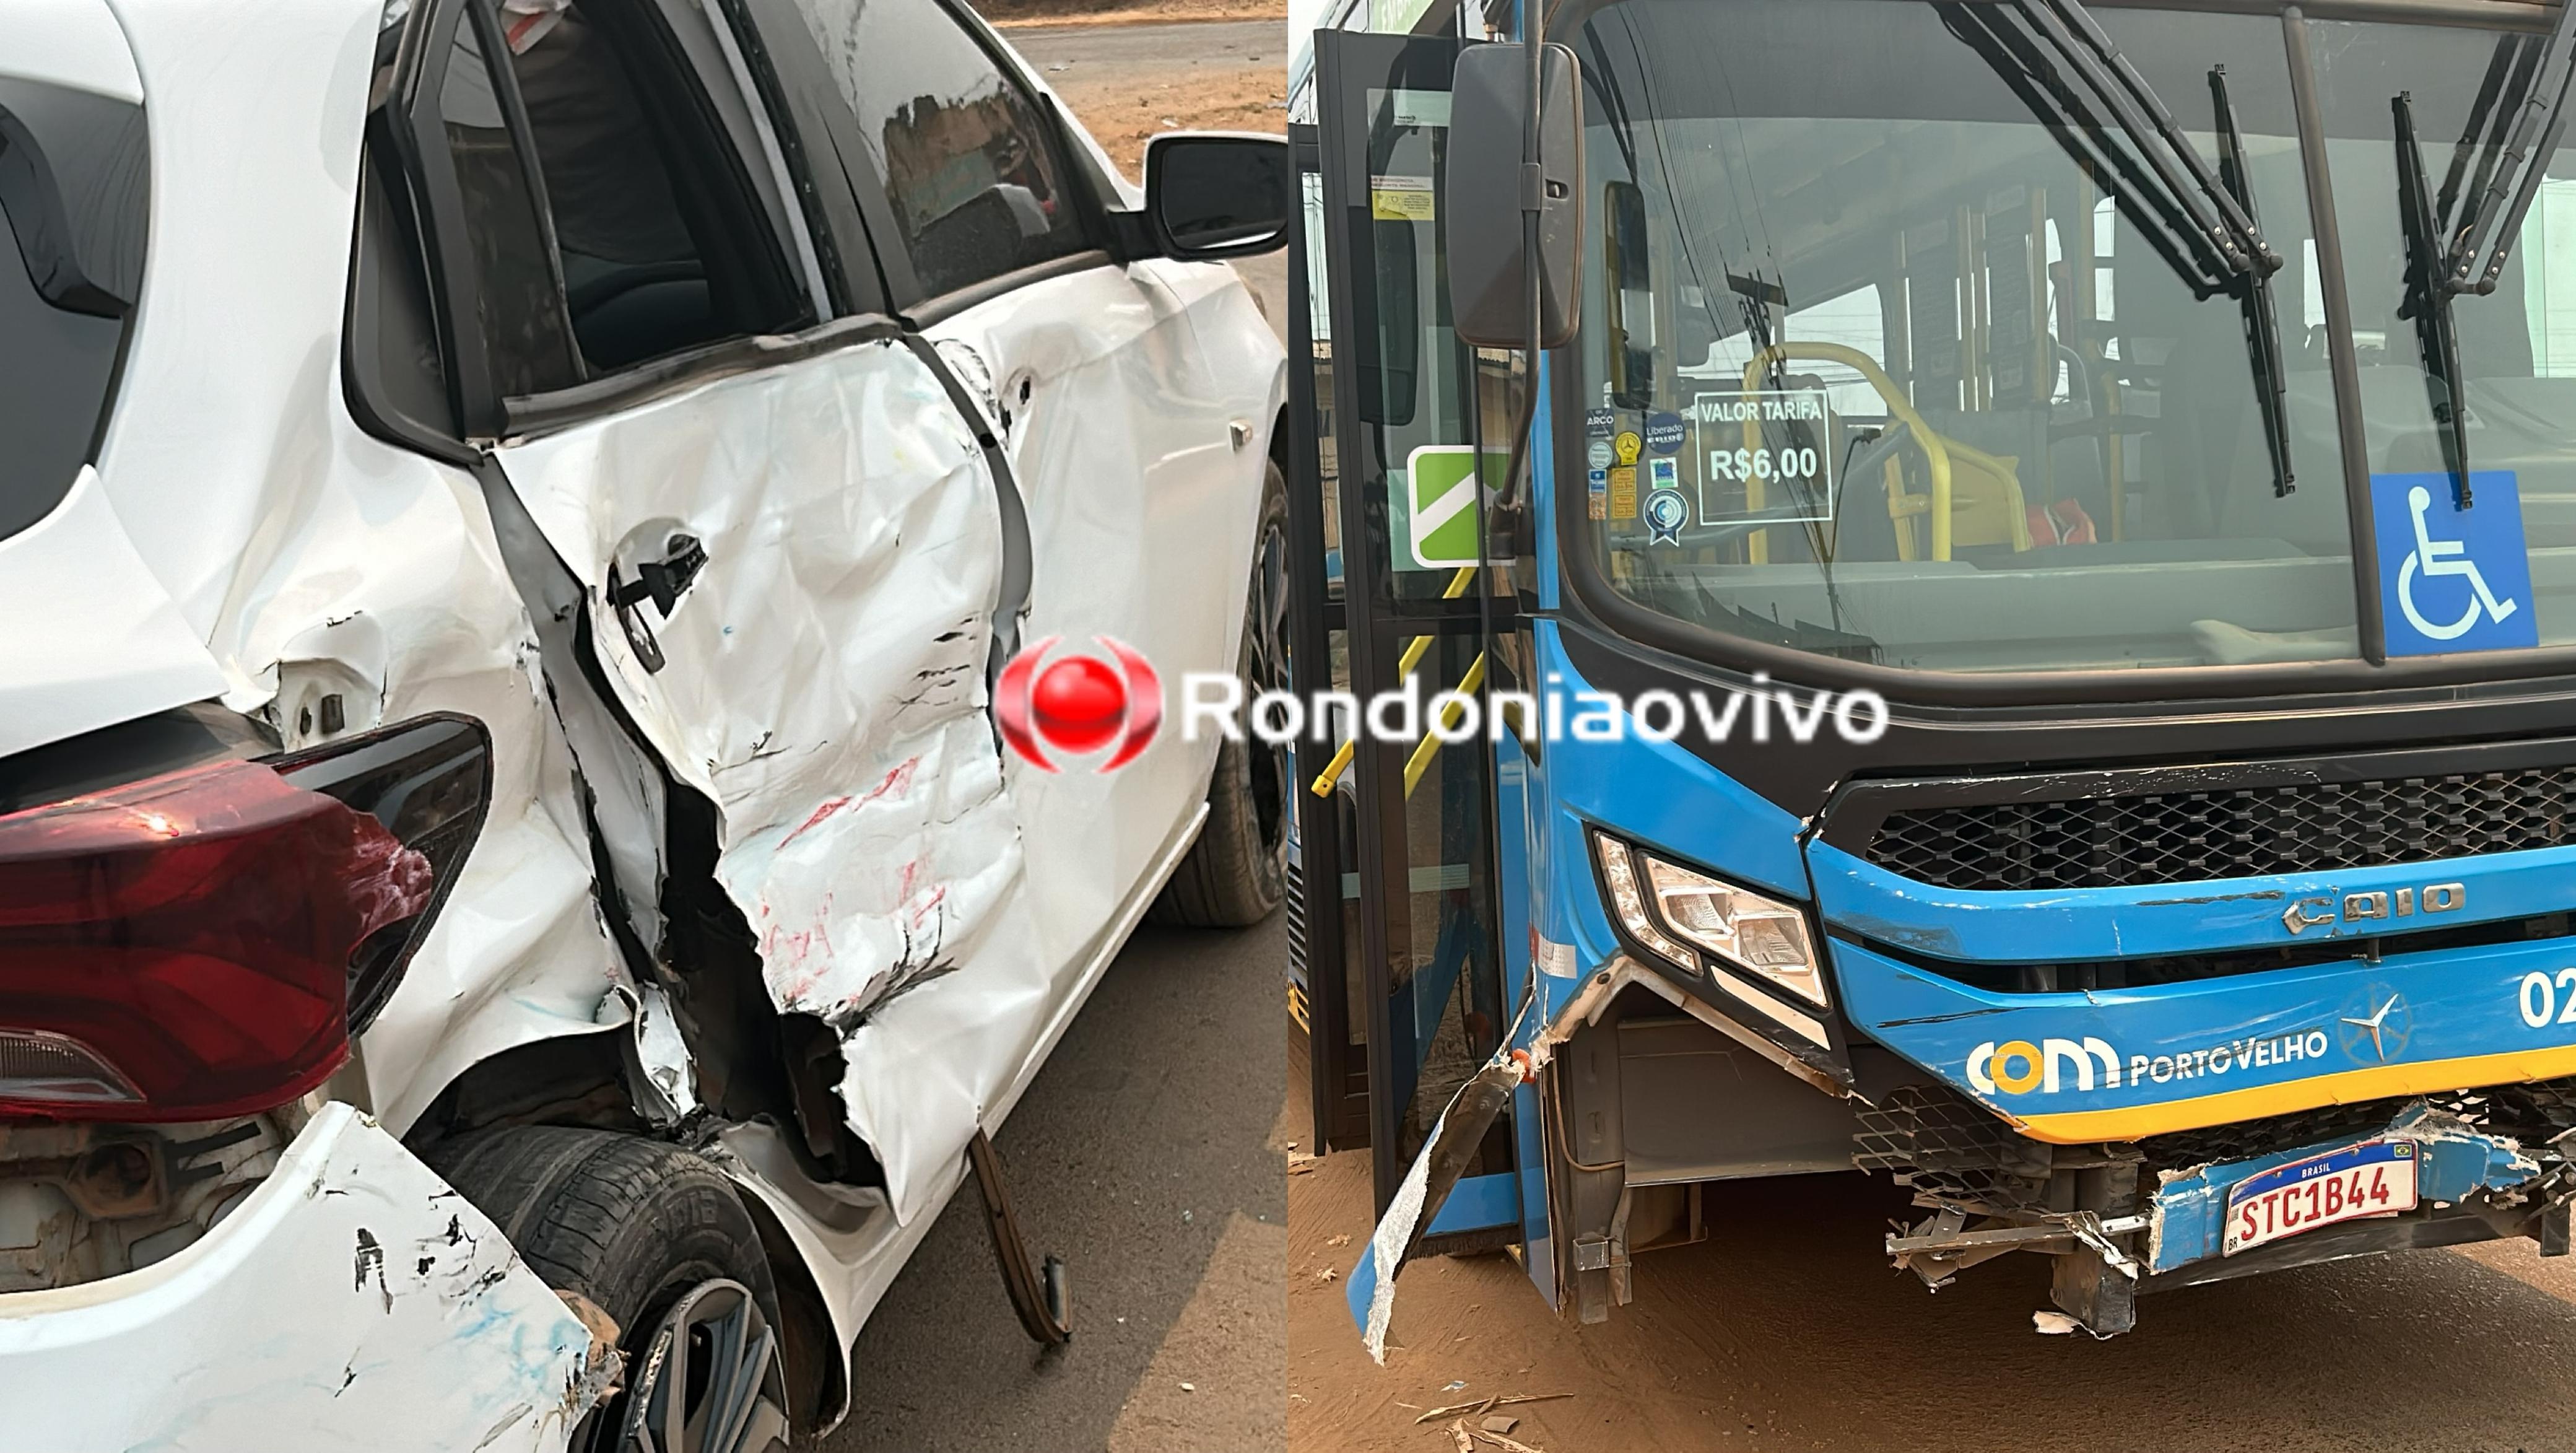 VÍDEO: Colisão entre ônibus e carro de aplicativo deixa passageiro ferido